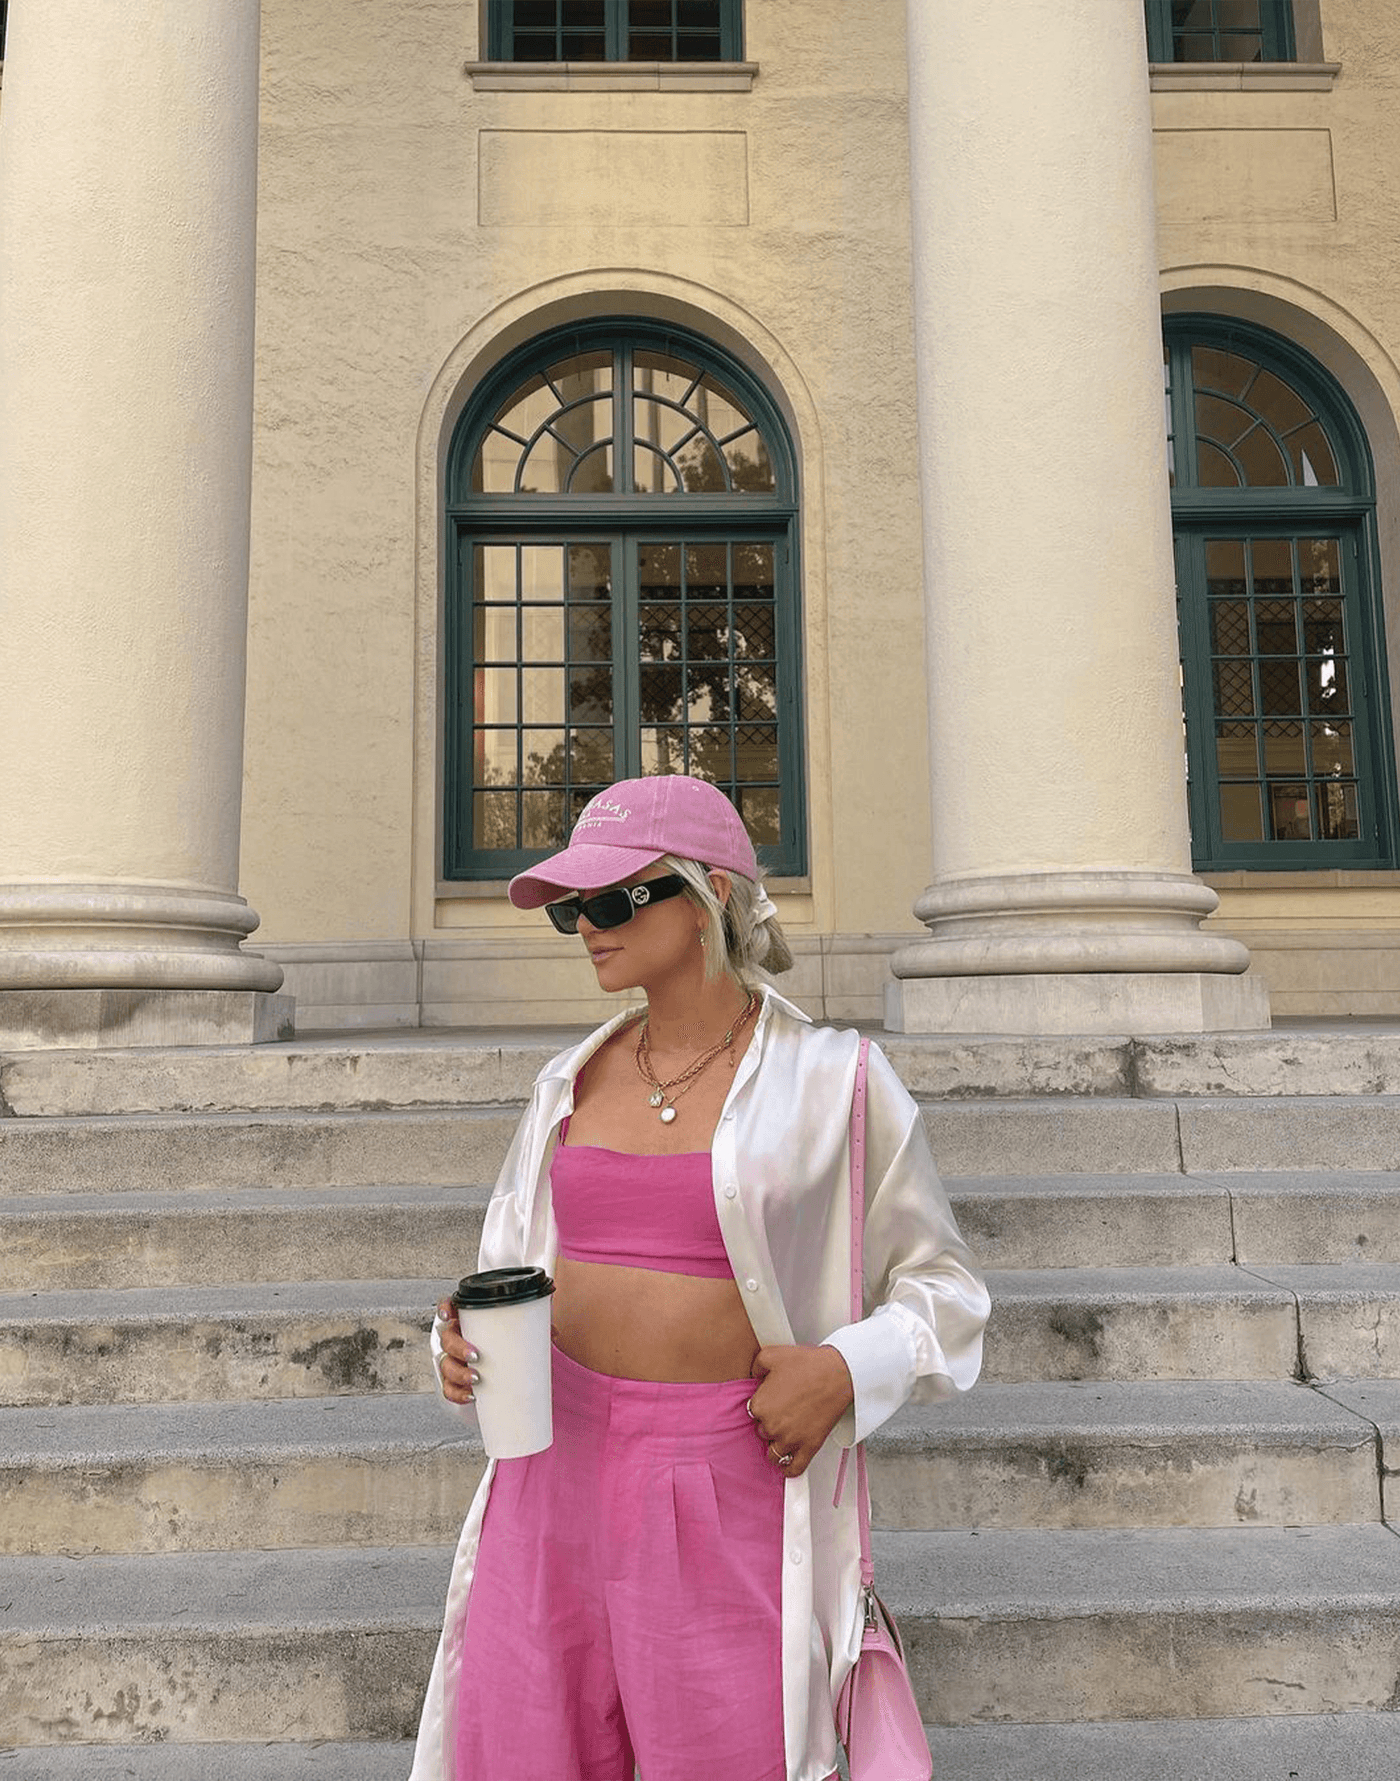 Cairo Crop Top (Pink) - Pink Linen Crop Top - Women's Top - Charcoal Clothing